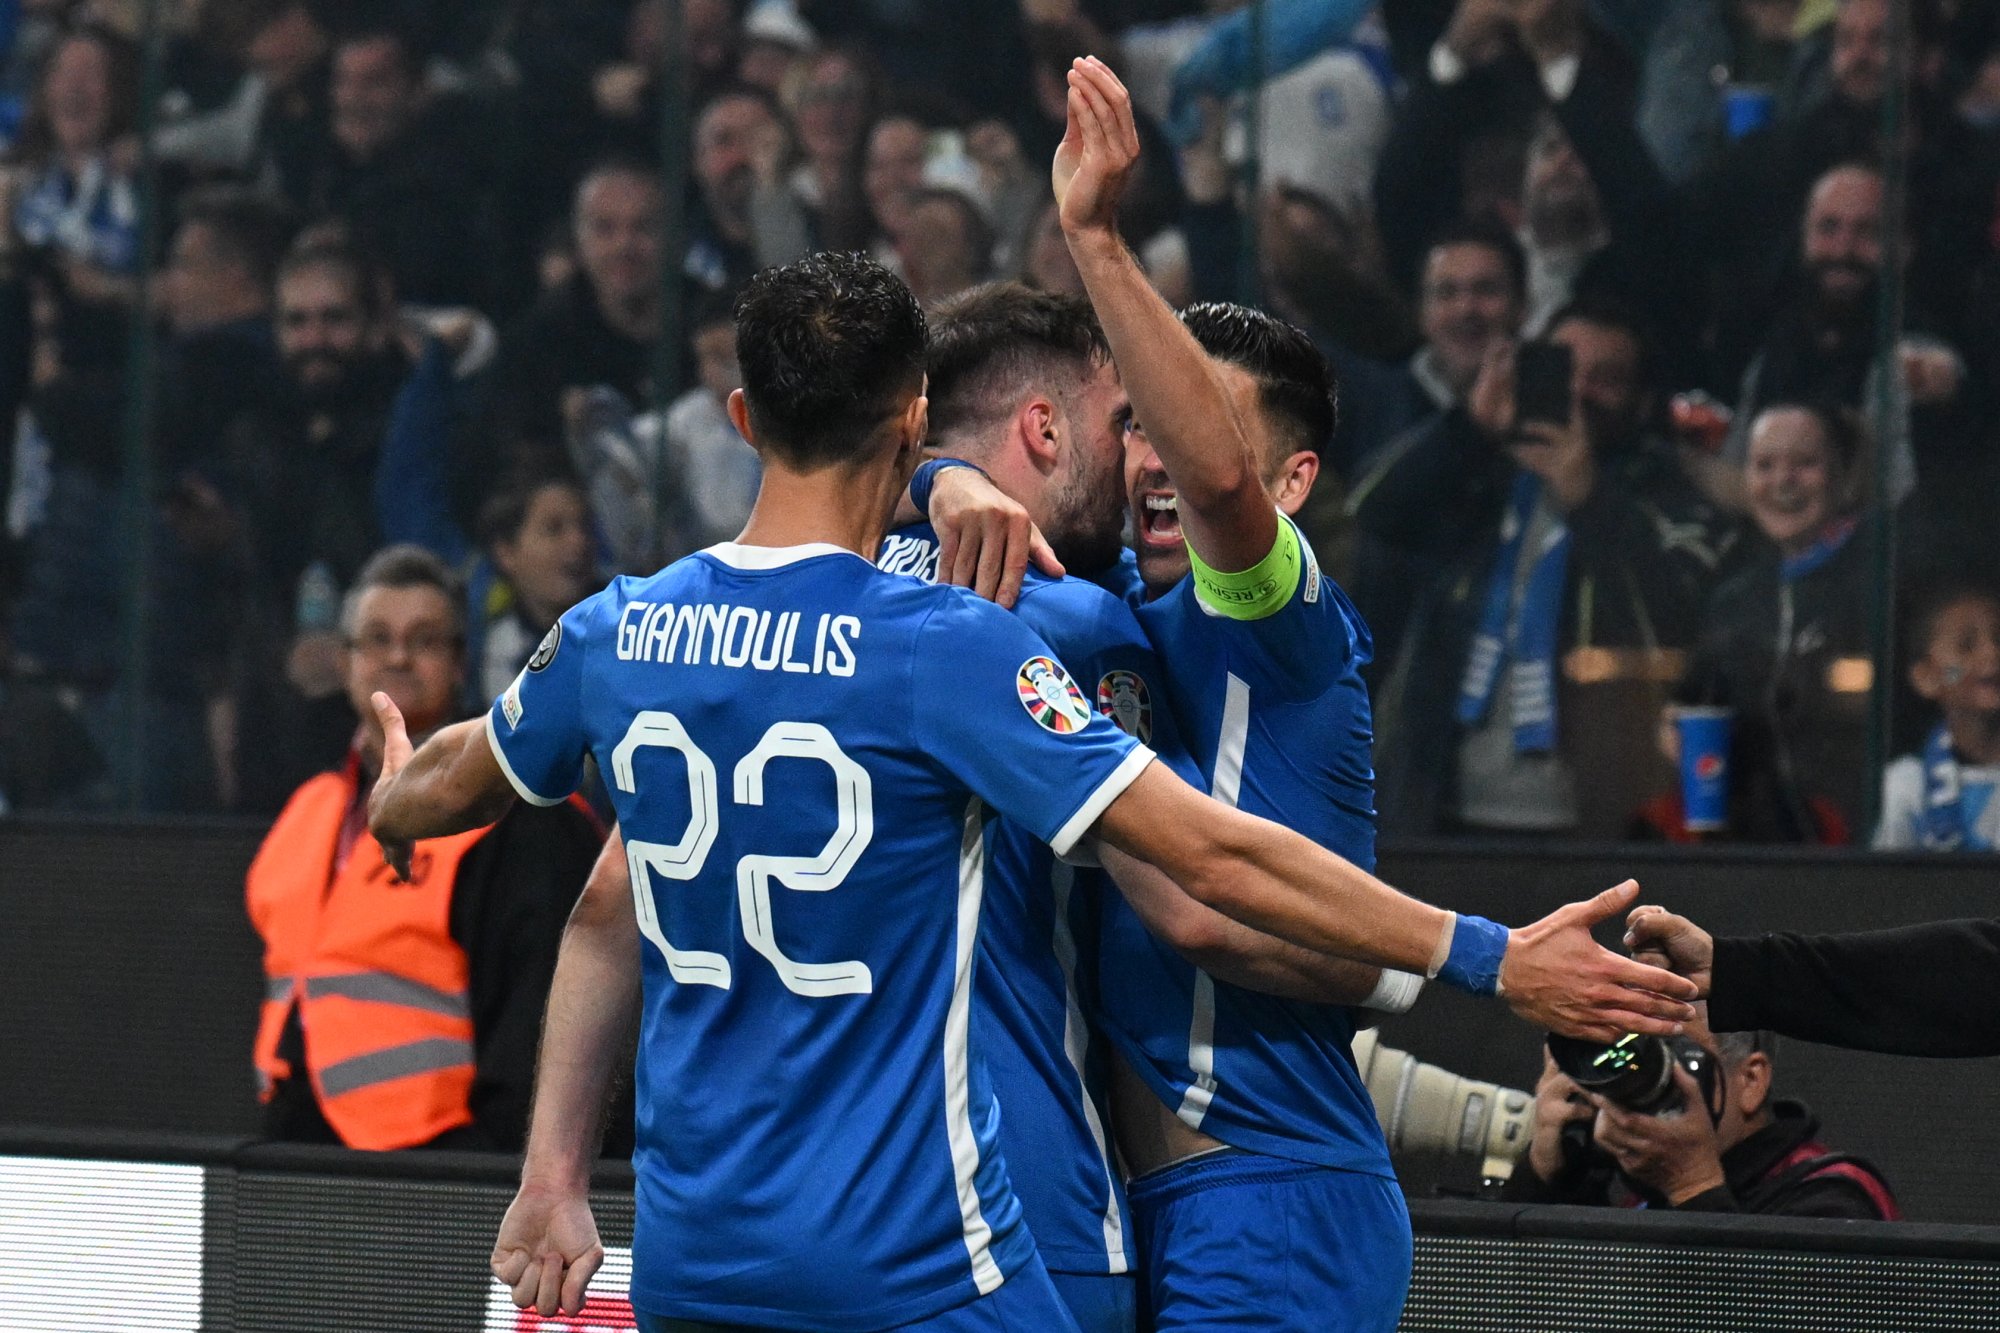 Ελλάδα - Γαλλία: 2-1 η Εθνική με Μπακασέτα και Ιωαννίδη, 2-2 ο Φοφανά (vids)